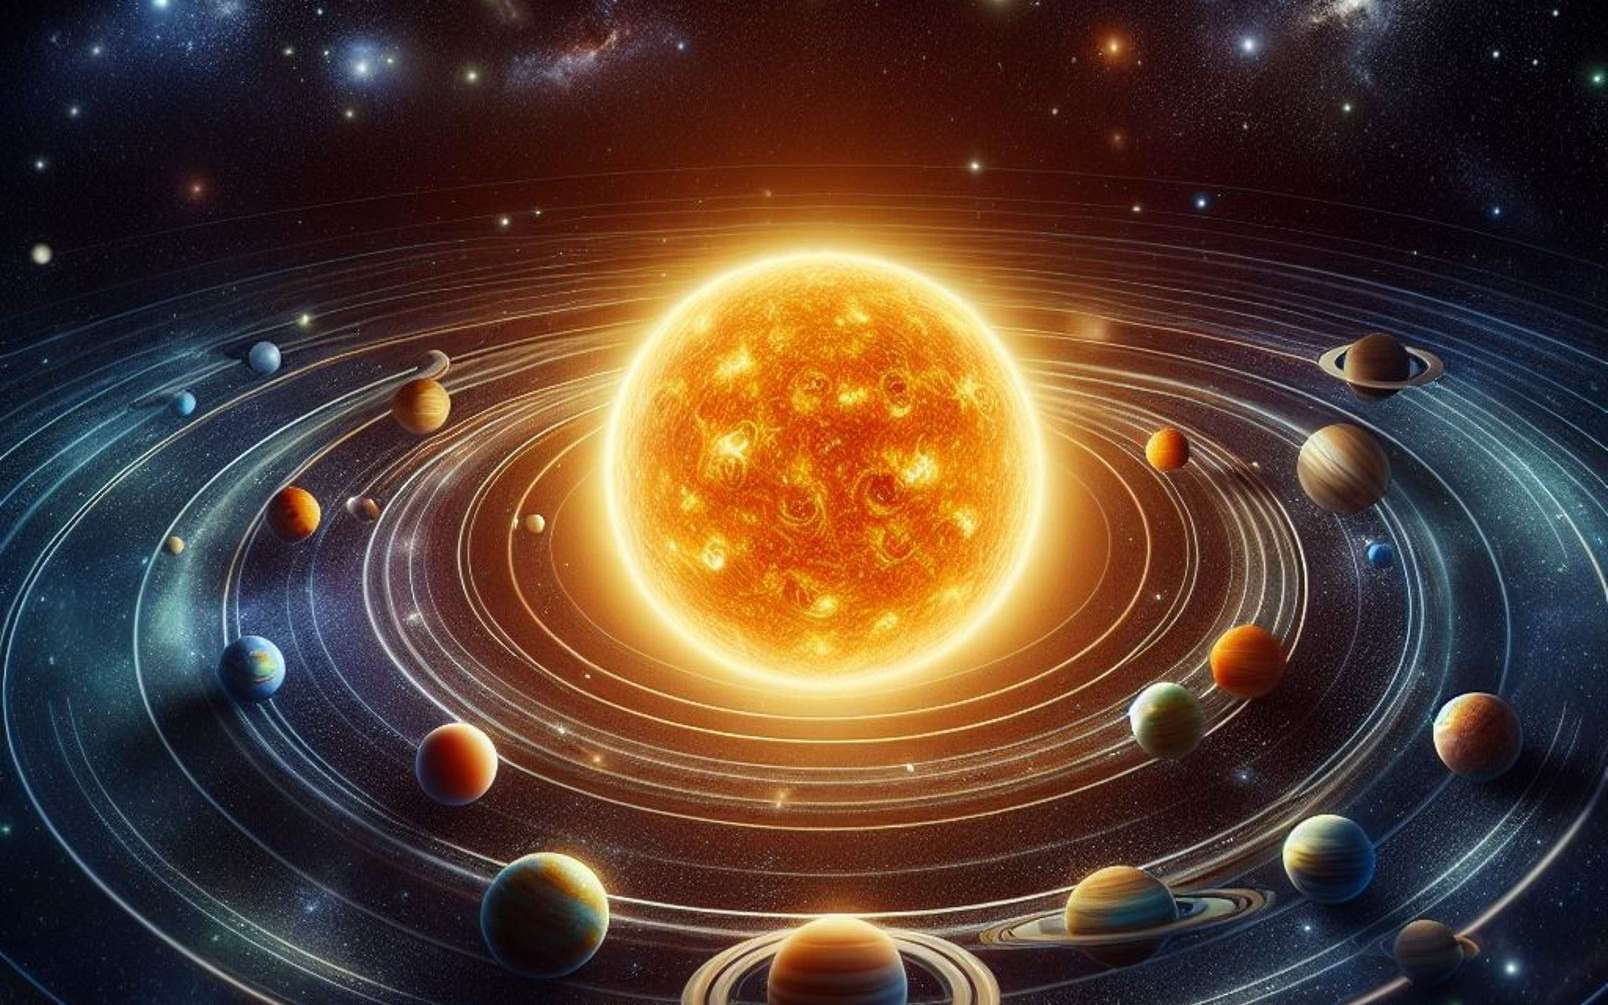 Des étoiles auraient modifié l’orbite et le climat passés de la Terre